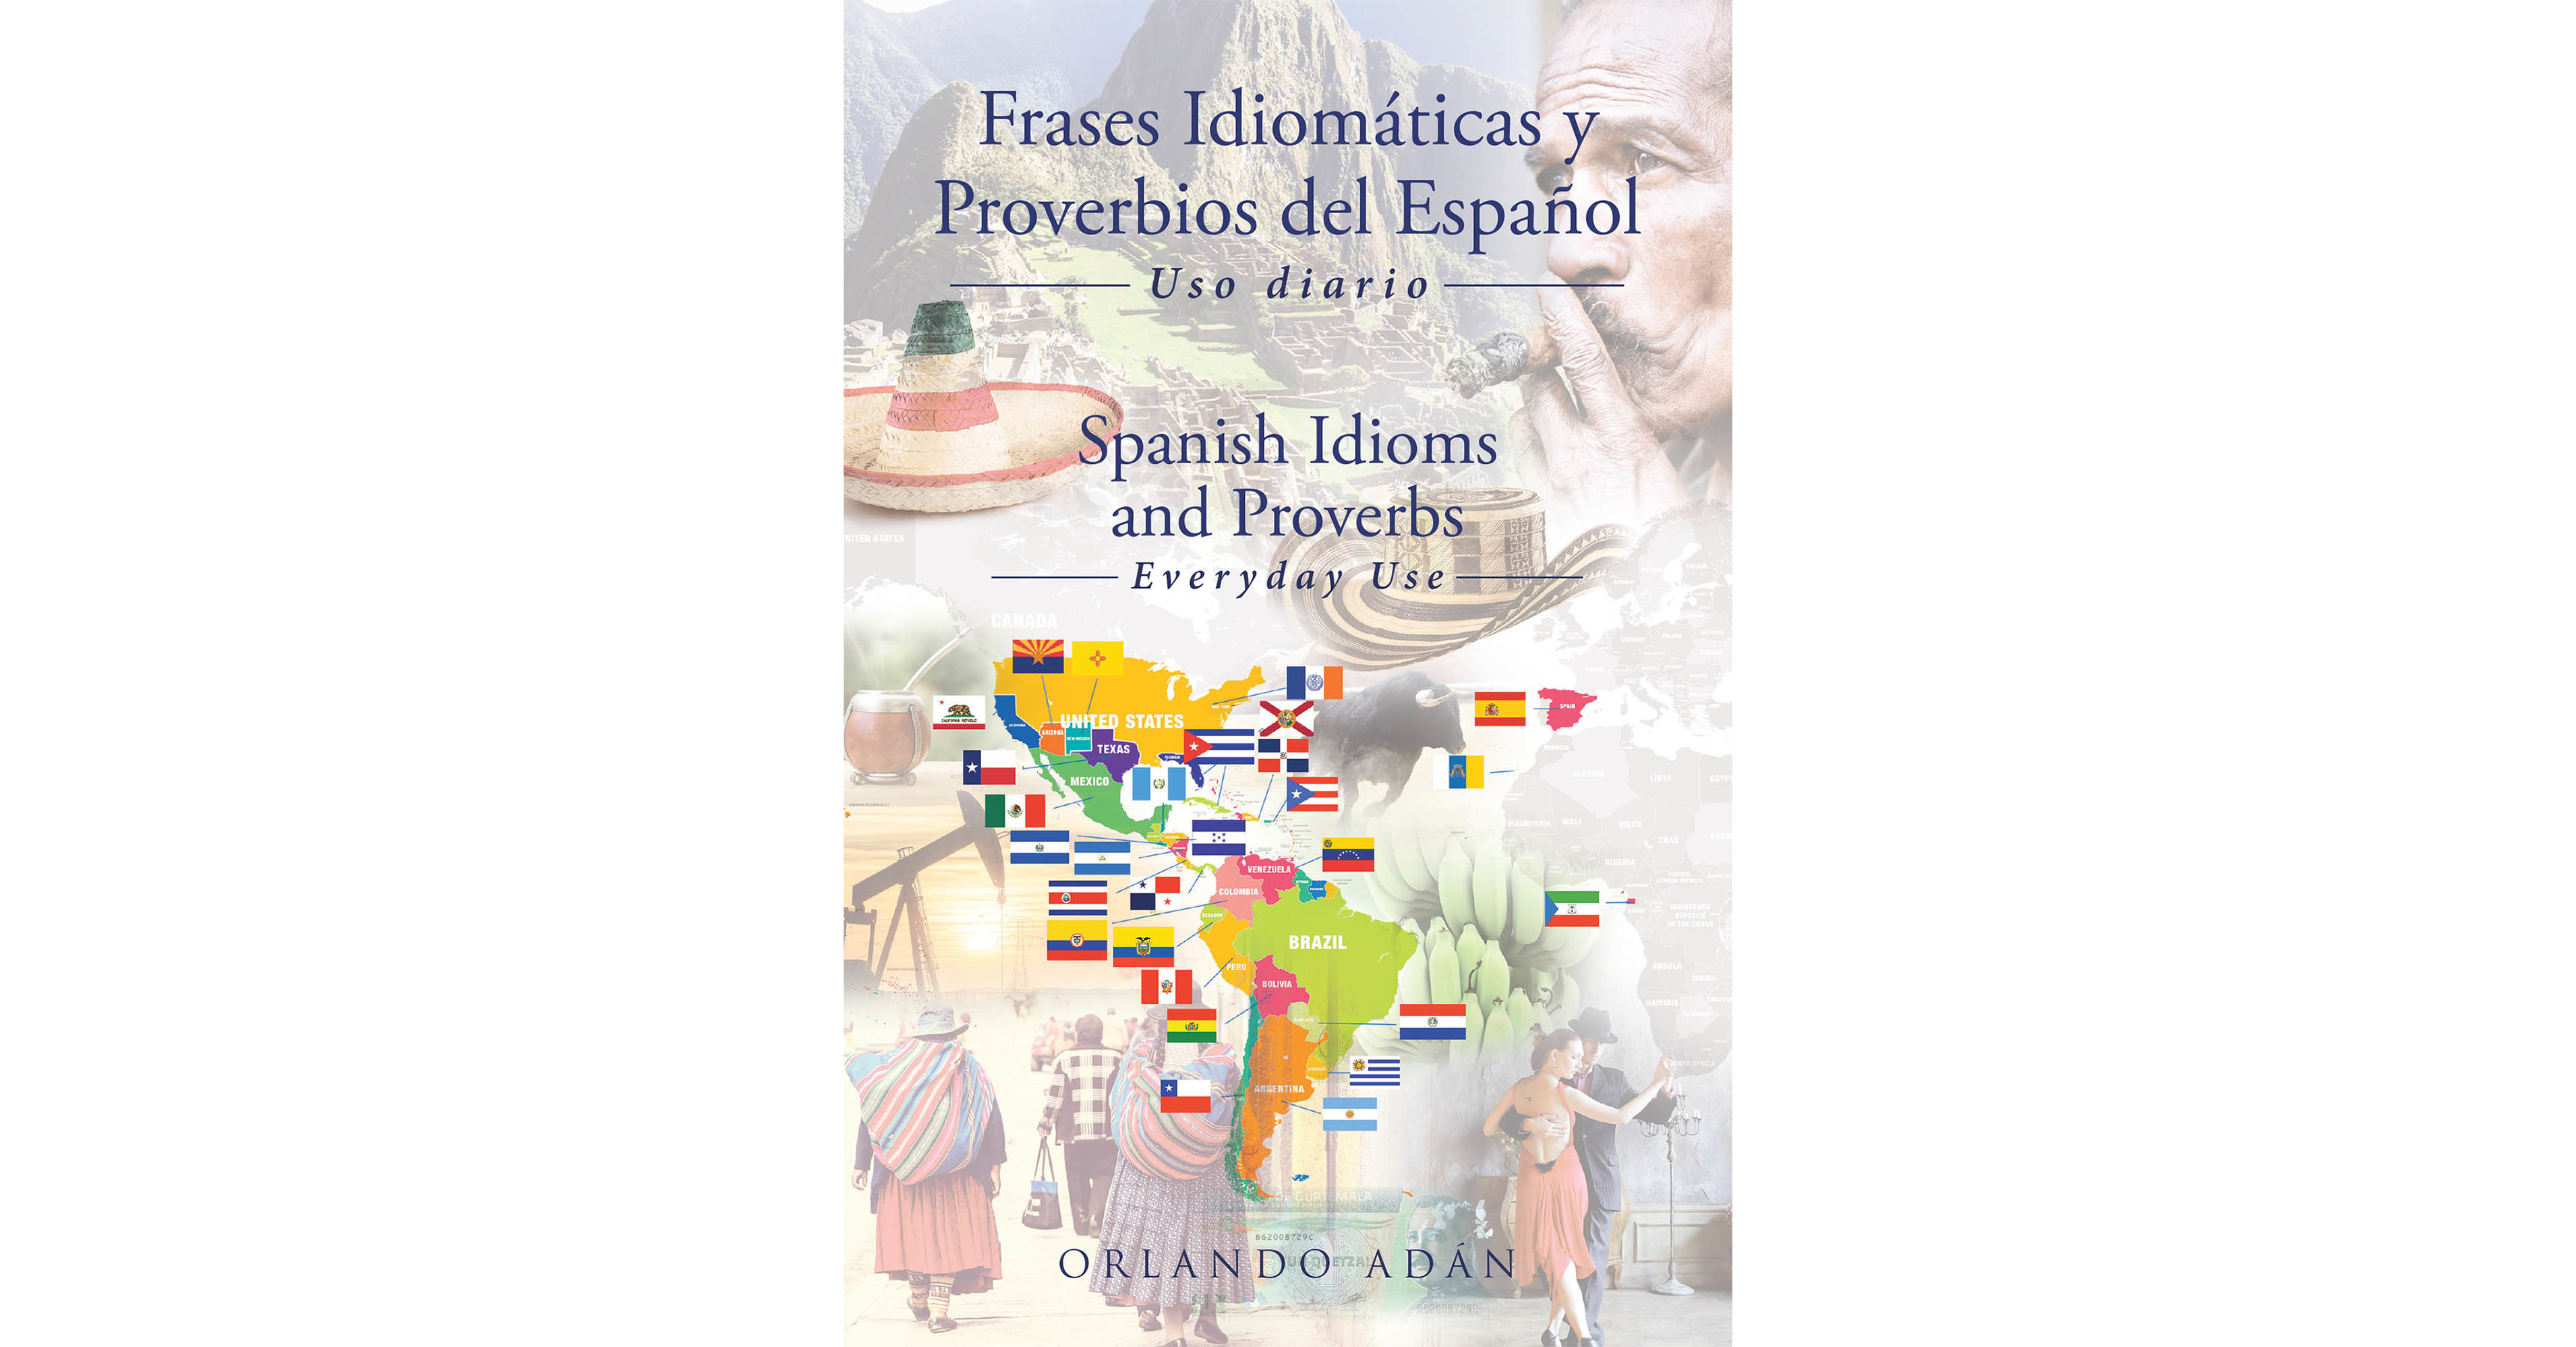 El nuevo libro de Orlando Adan, Phrase idiomaticas o Proverbios del Espanol, es una colección reveladora de proverbios históricos y culturales nuevos y familiares en español.